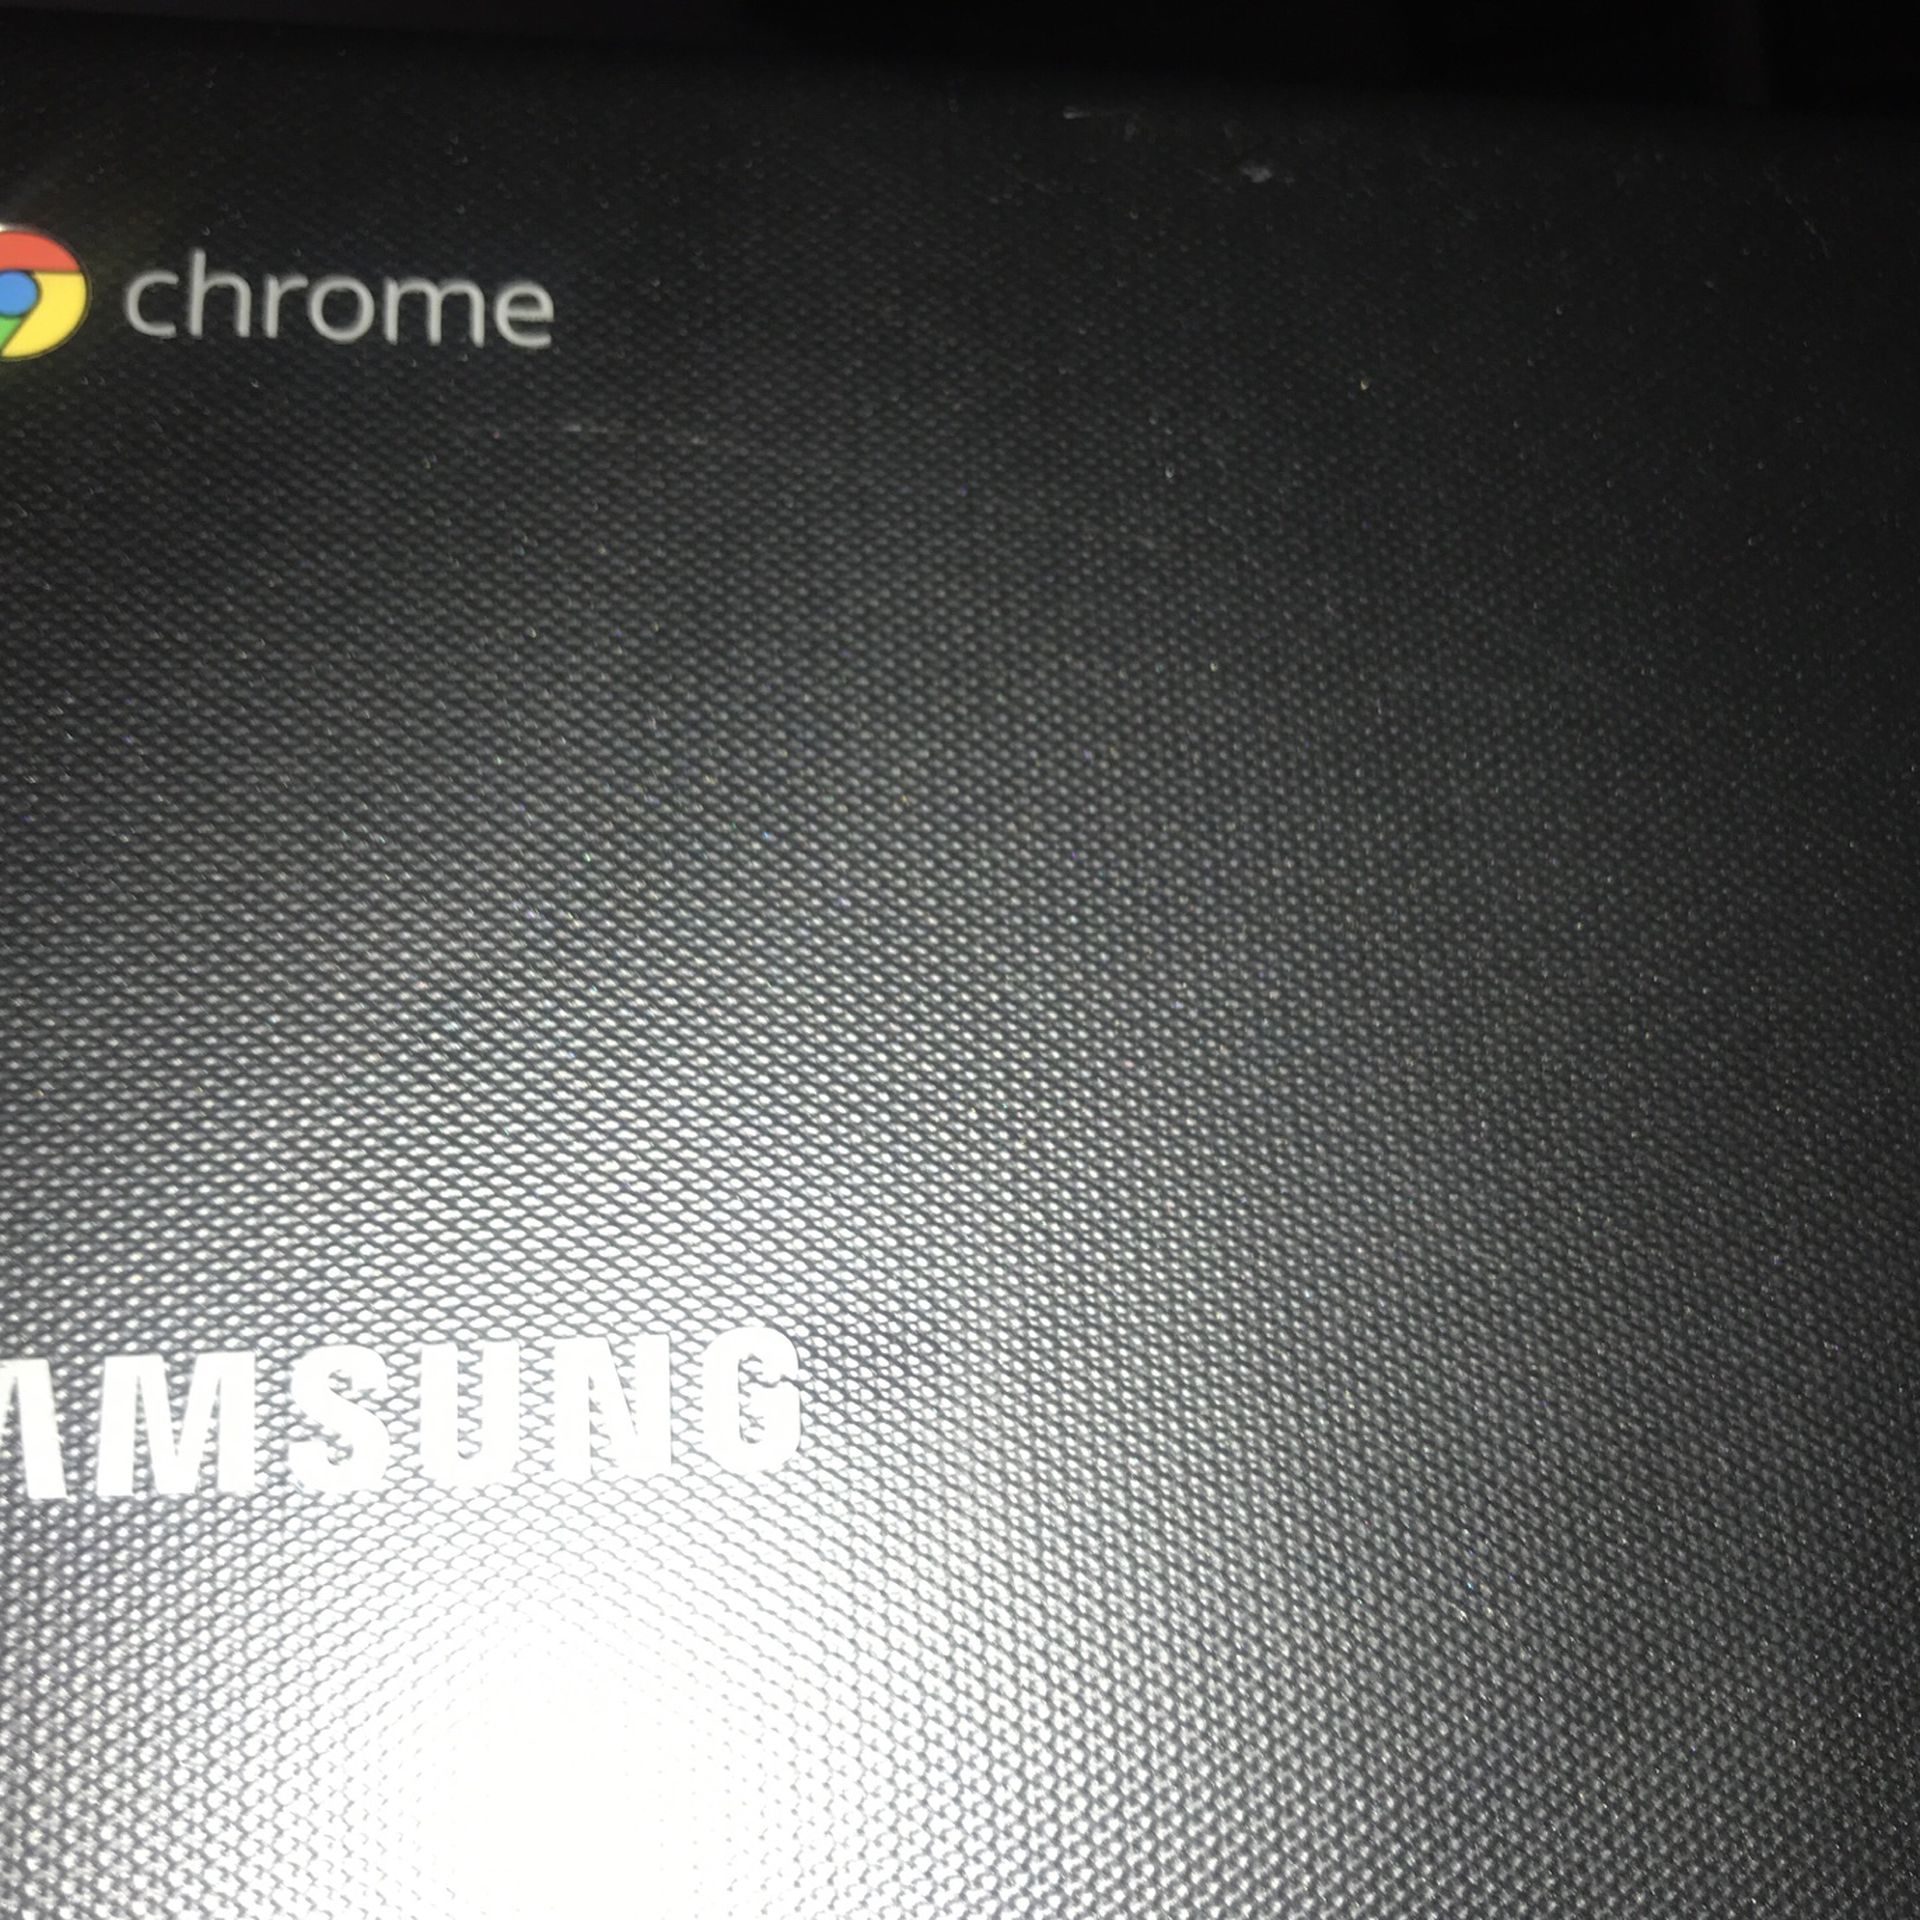 Samsung Chrome